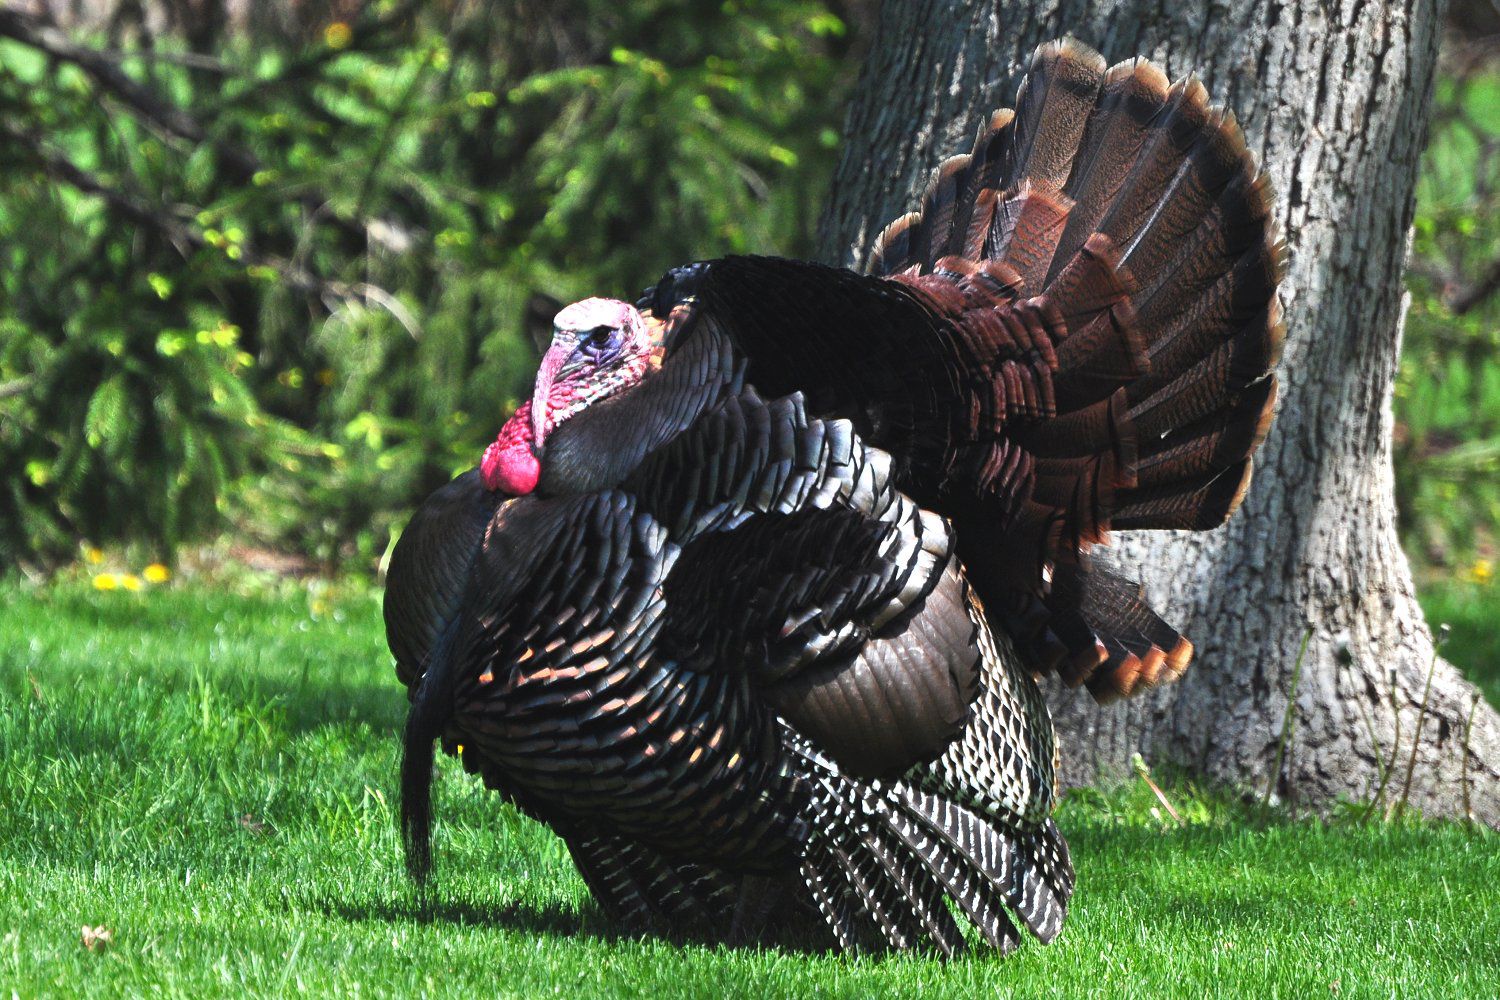 wild-turkey-texas-parks-wildlife-department